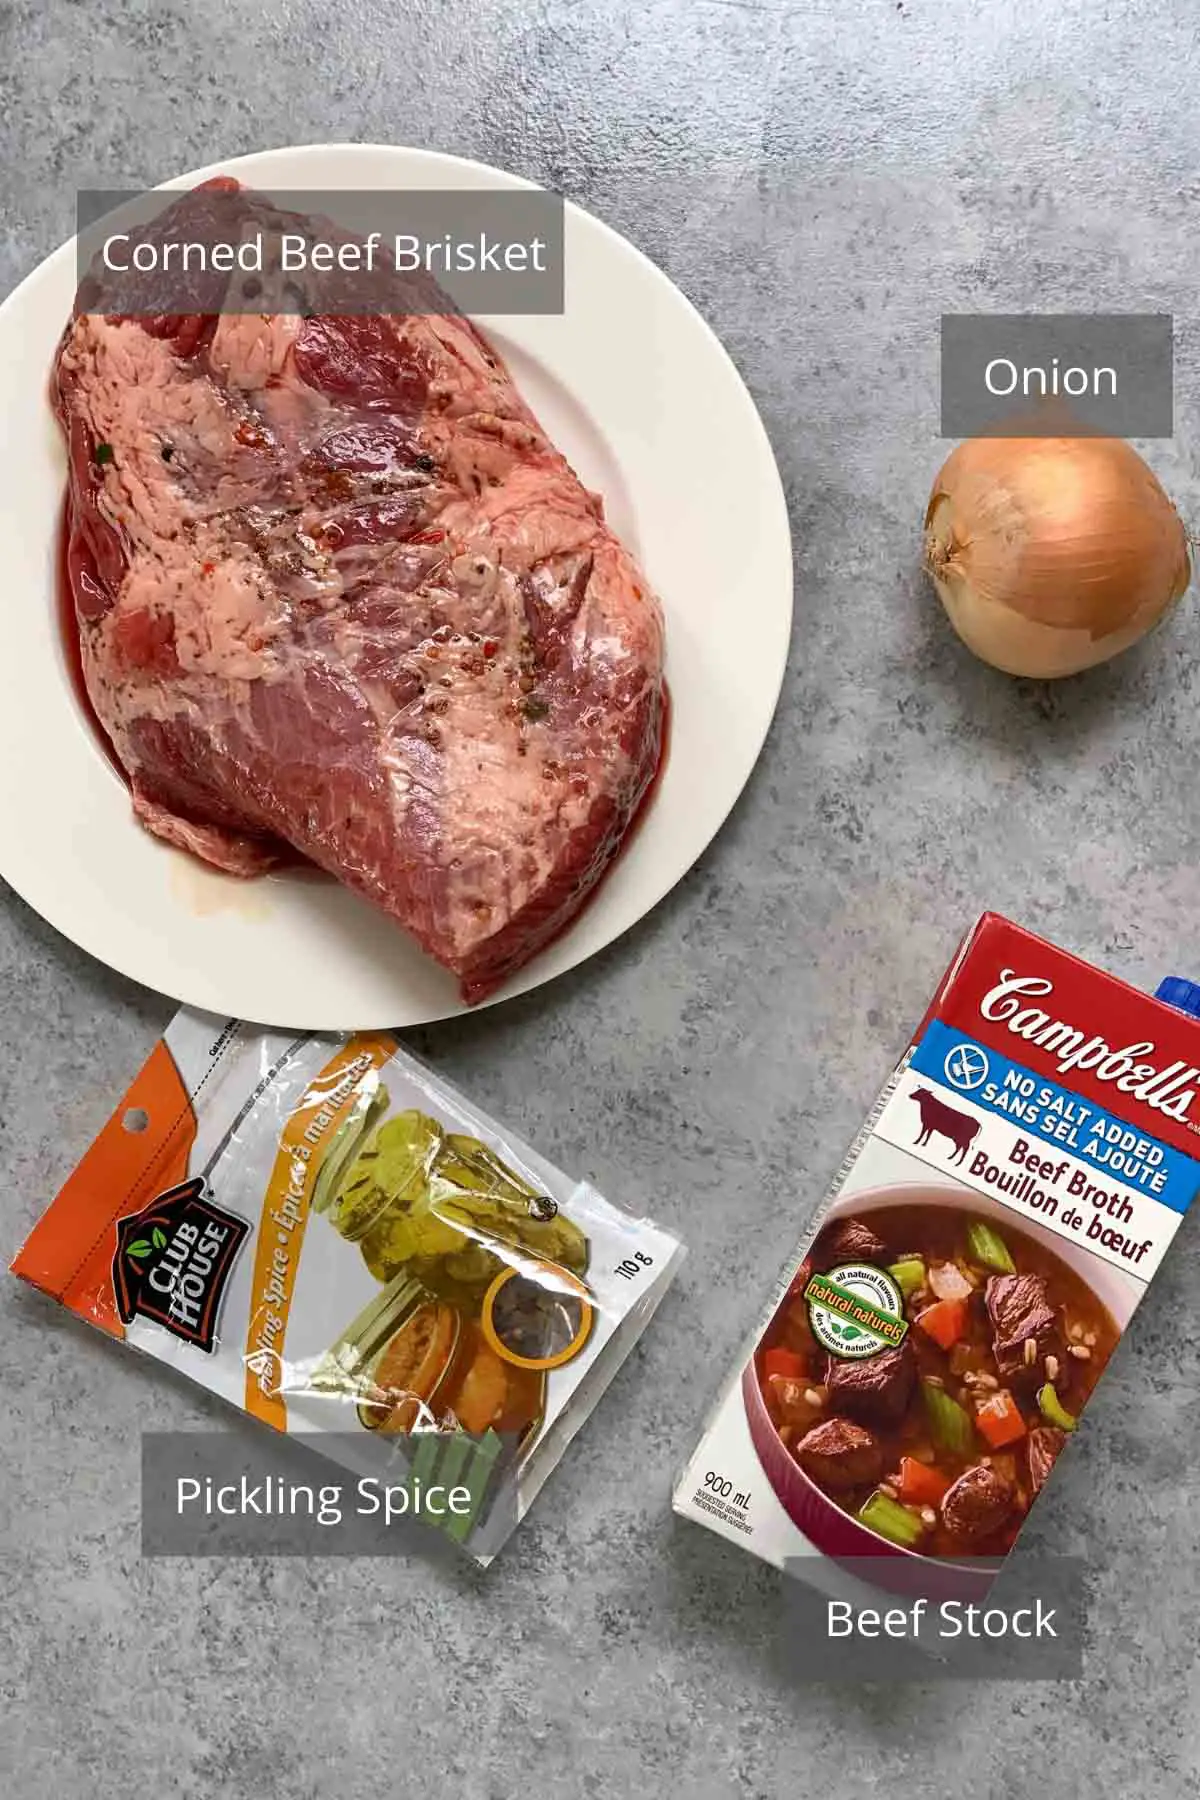 Mettre sous vide les ingrédients du corned-beef en conserve sur le comptoir.